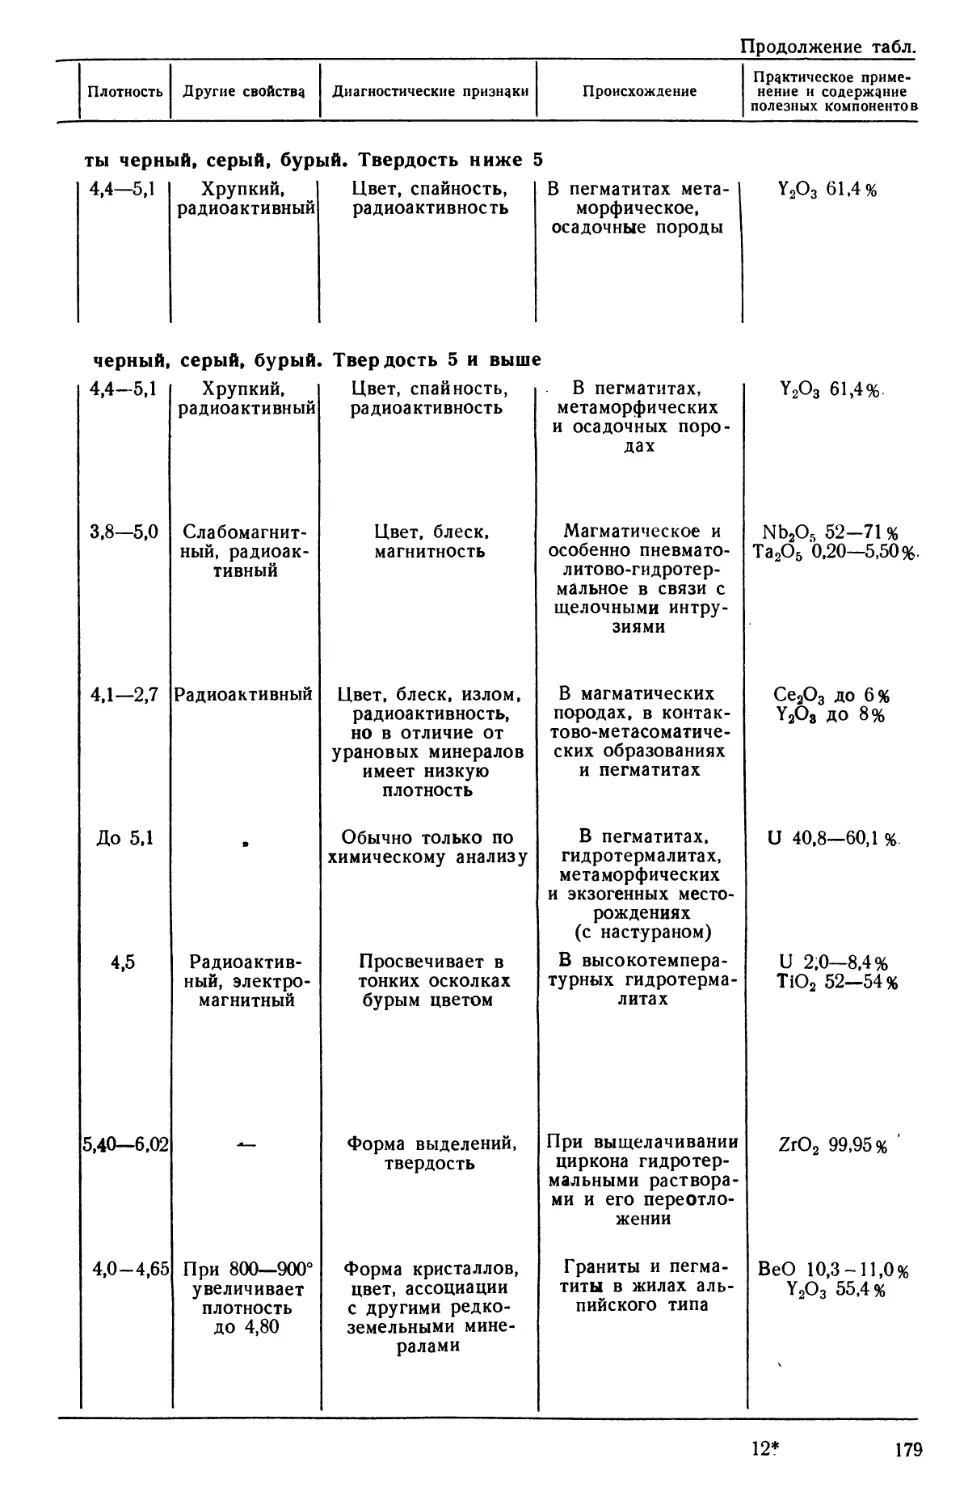 Приложение 1. Сводная таблица главных рудных и породообразующих минералов.